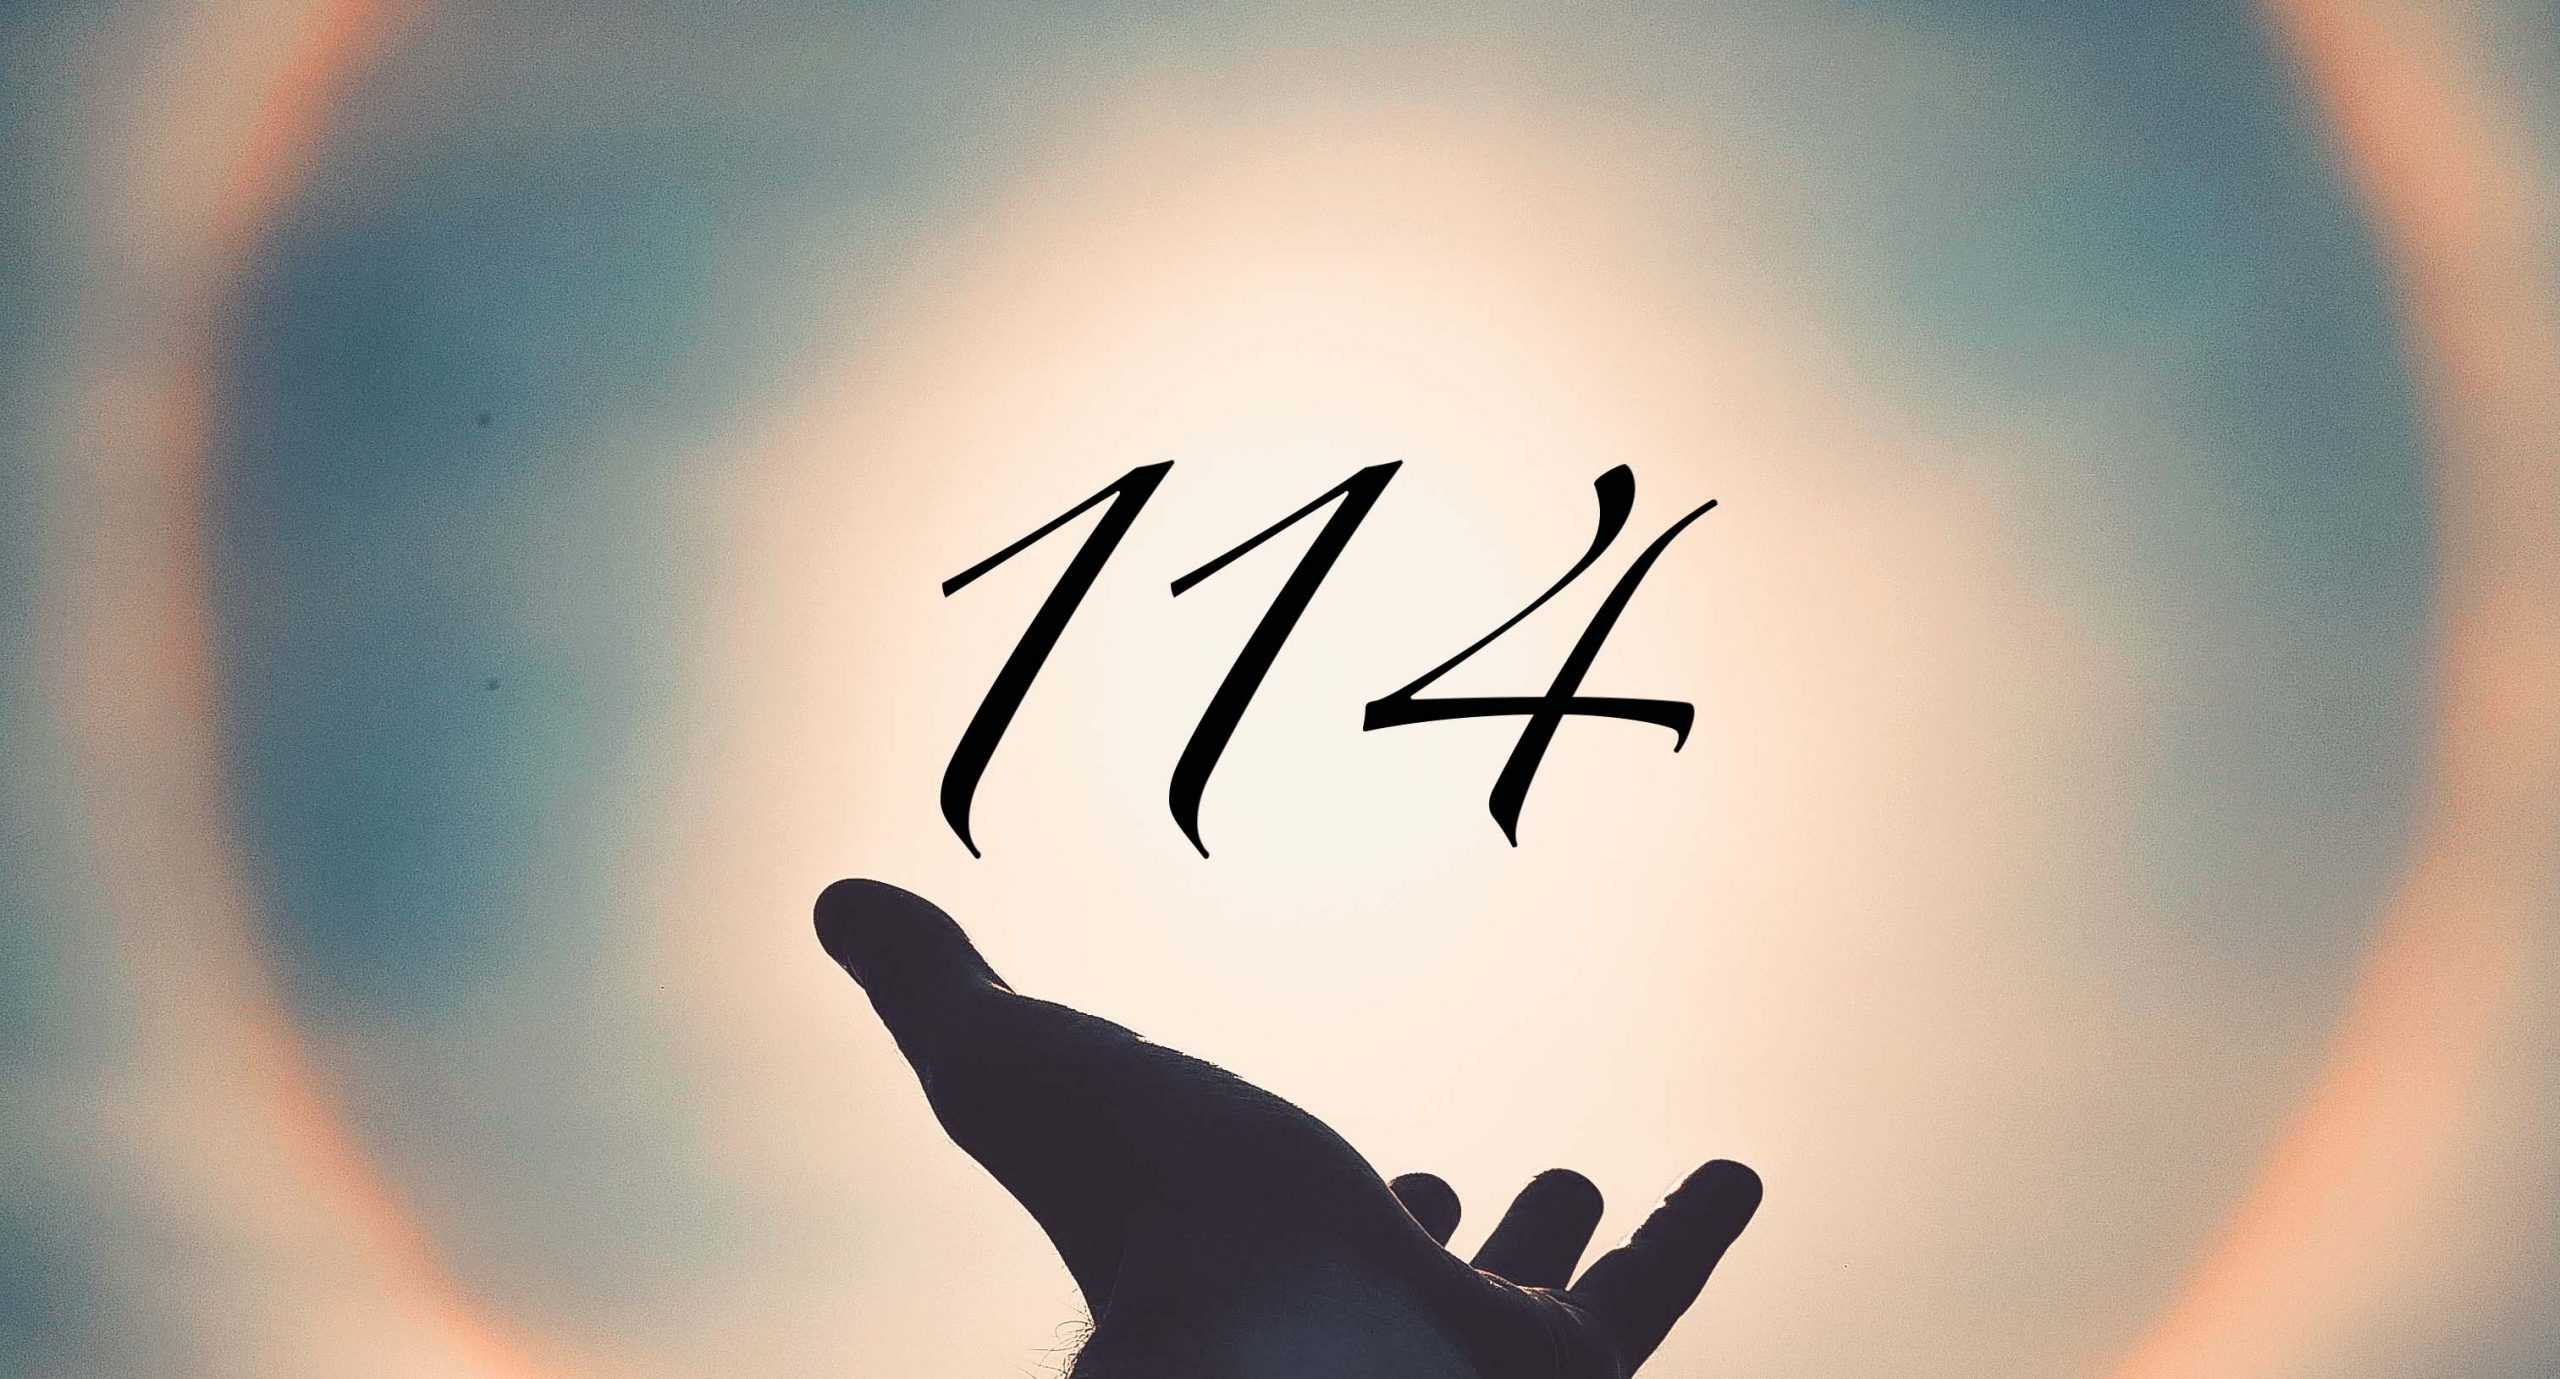 Signification du nombre 114